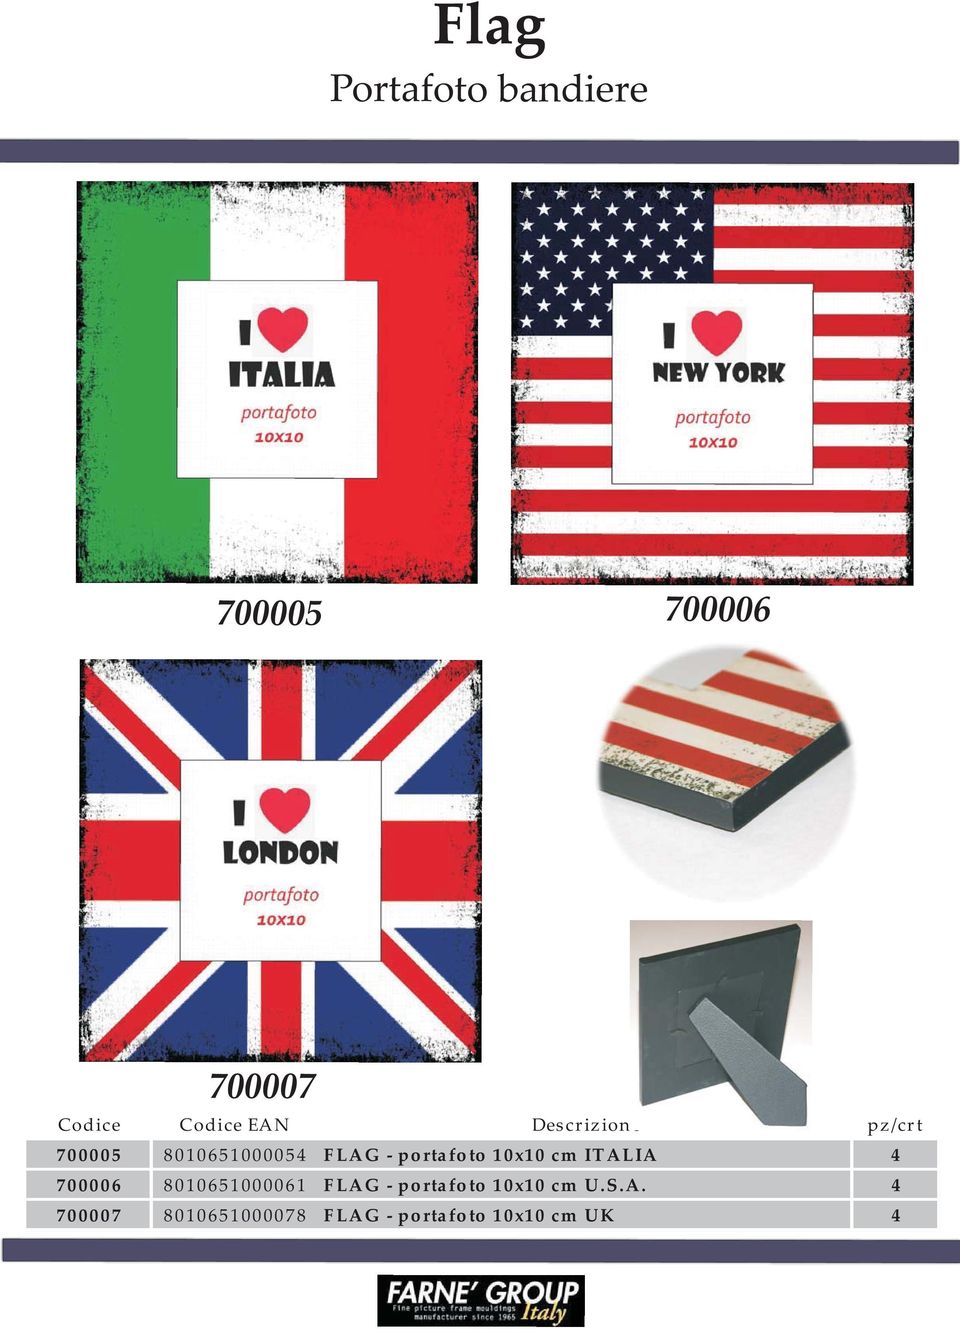 700006 8010651000061 FLAG - portafoto 10x10 cm U.S.